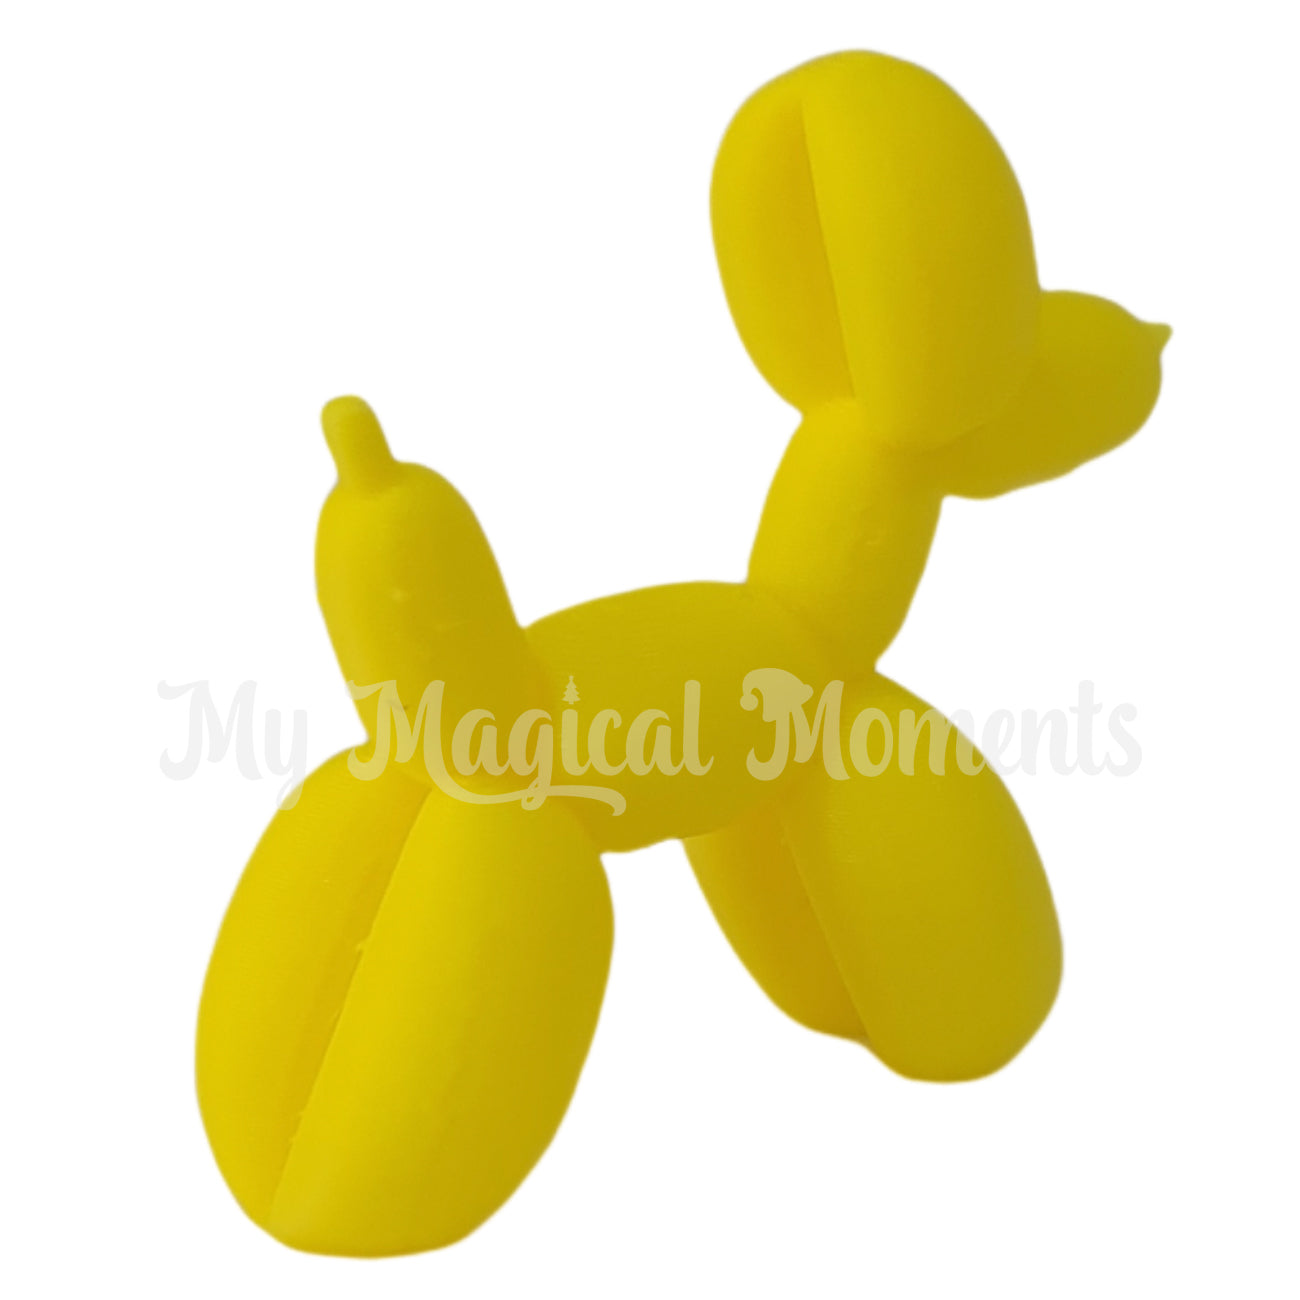 Miniature yellow balloon animal